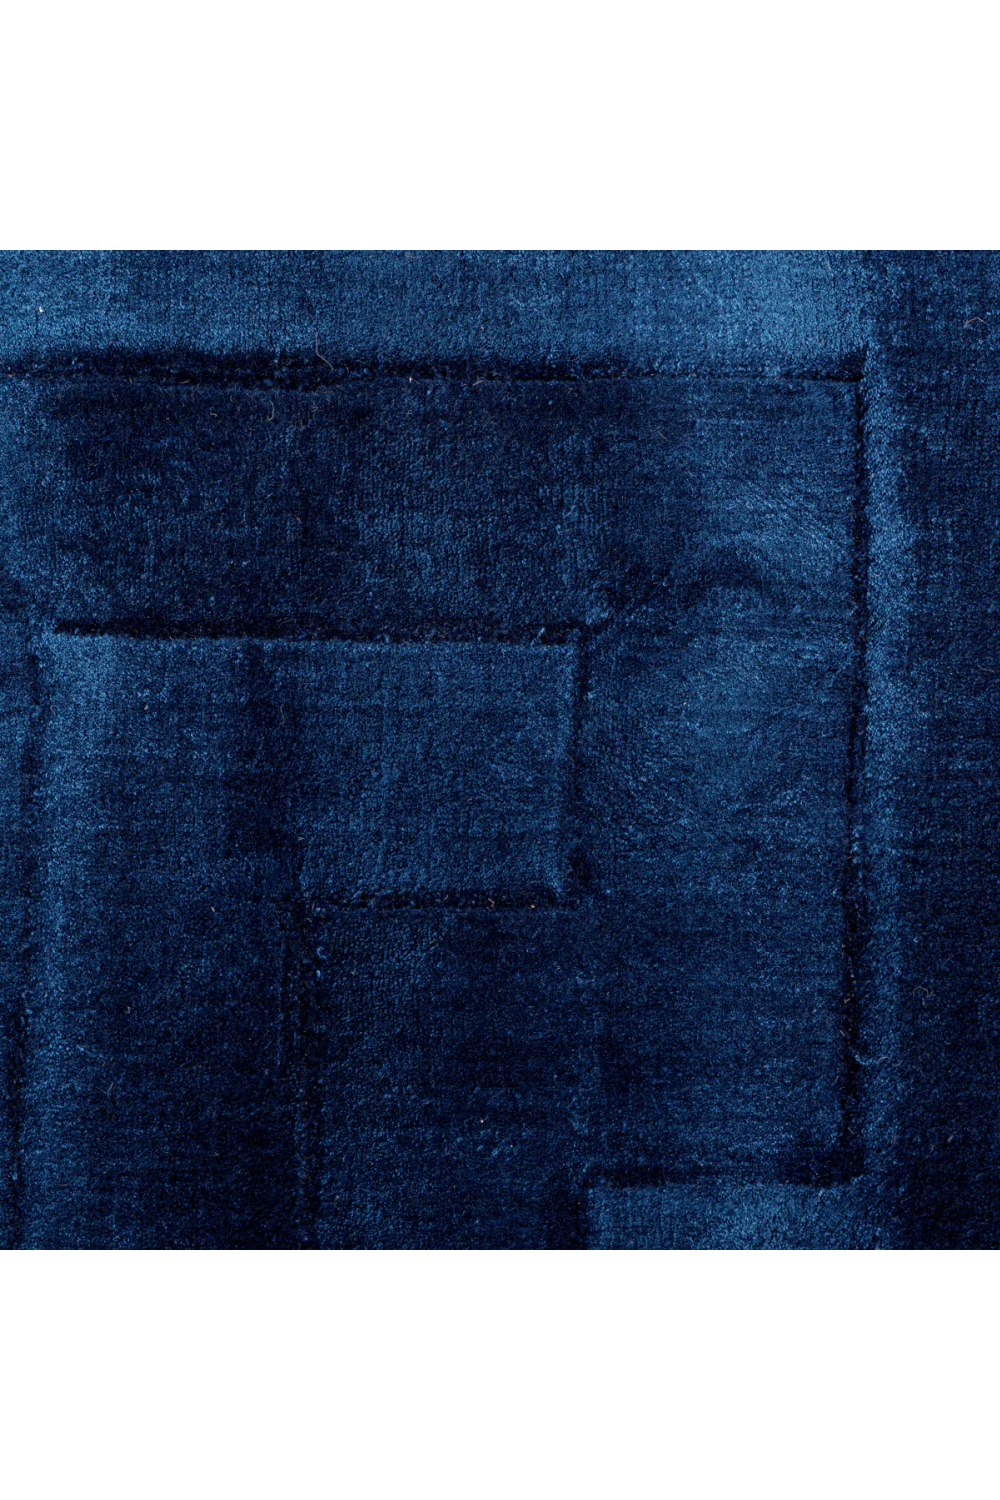 Sapphire Blue Rug 7' x 10' | Eichholtz Baldwin | Oroa.com